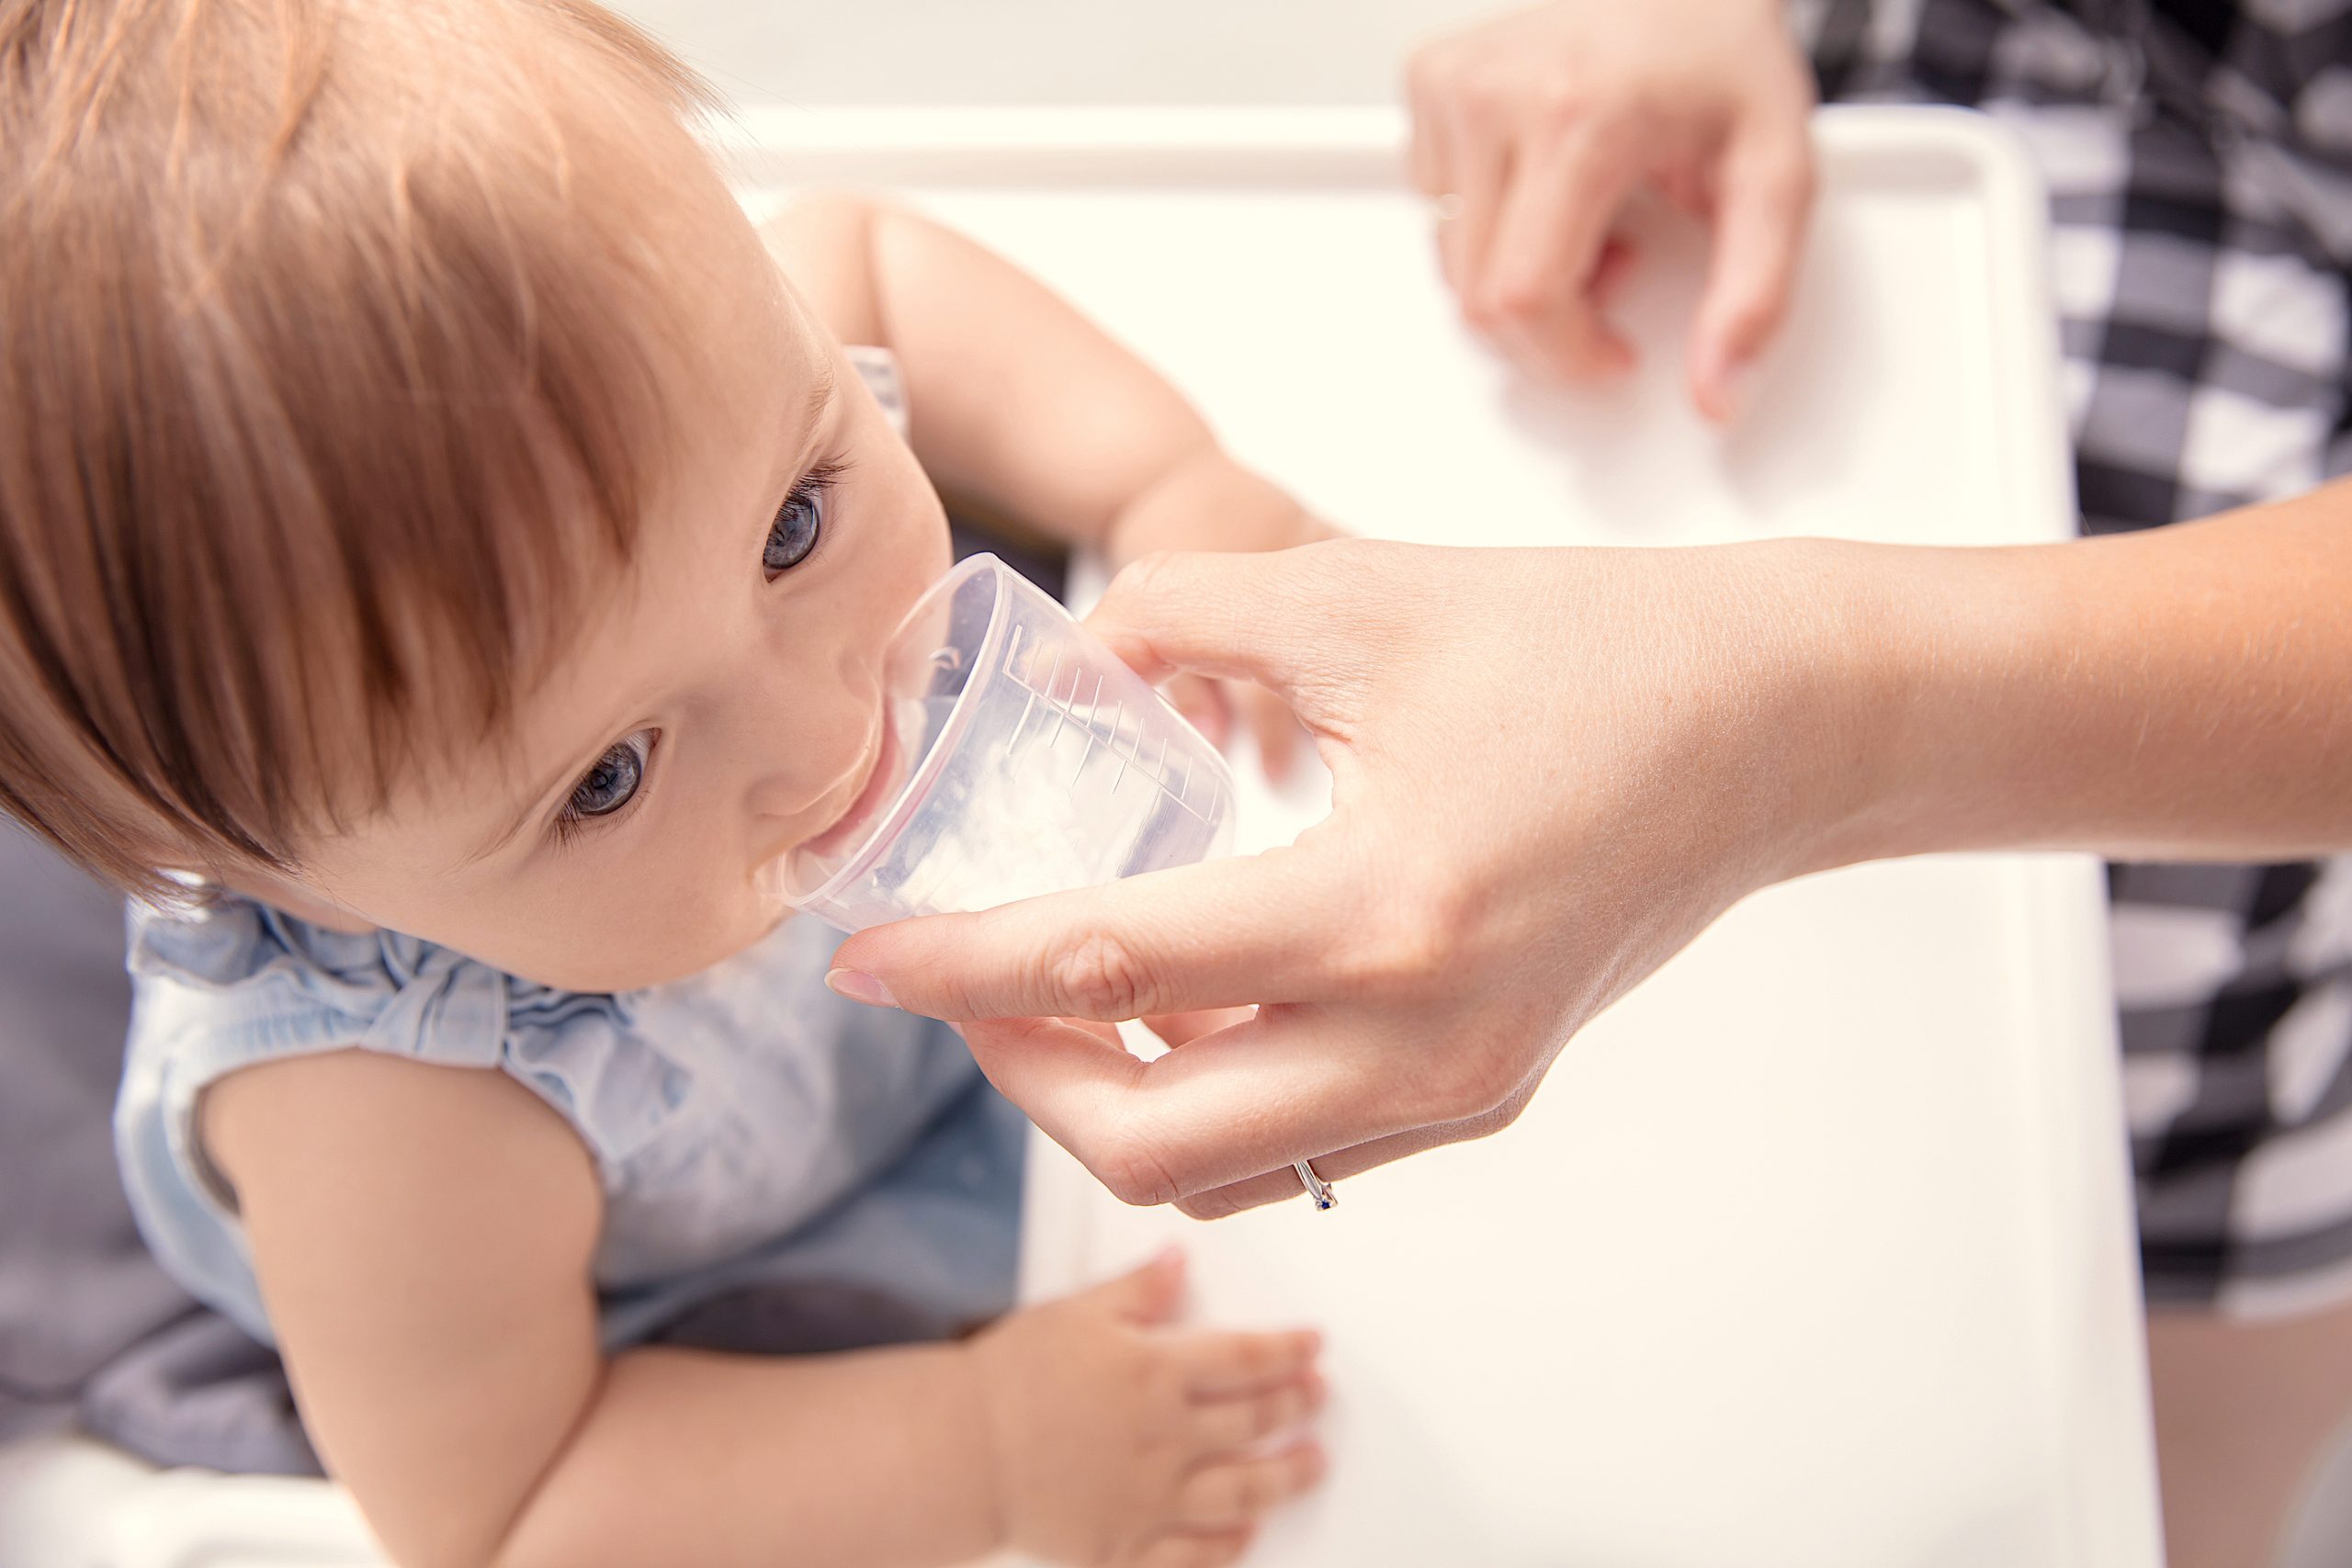 No dar agua a los bebés hasta los seis meses